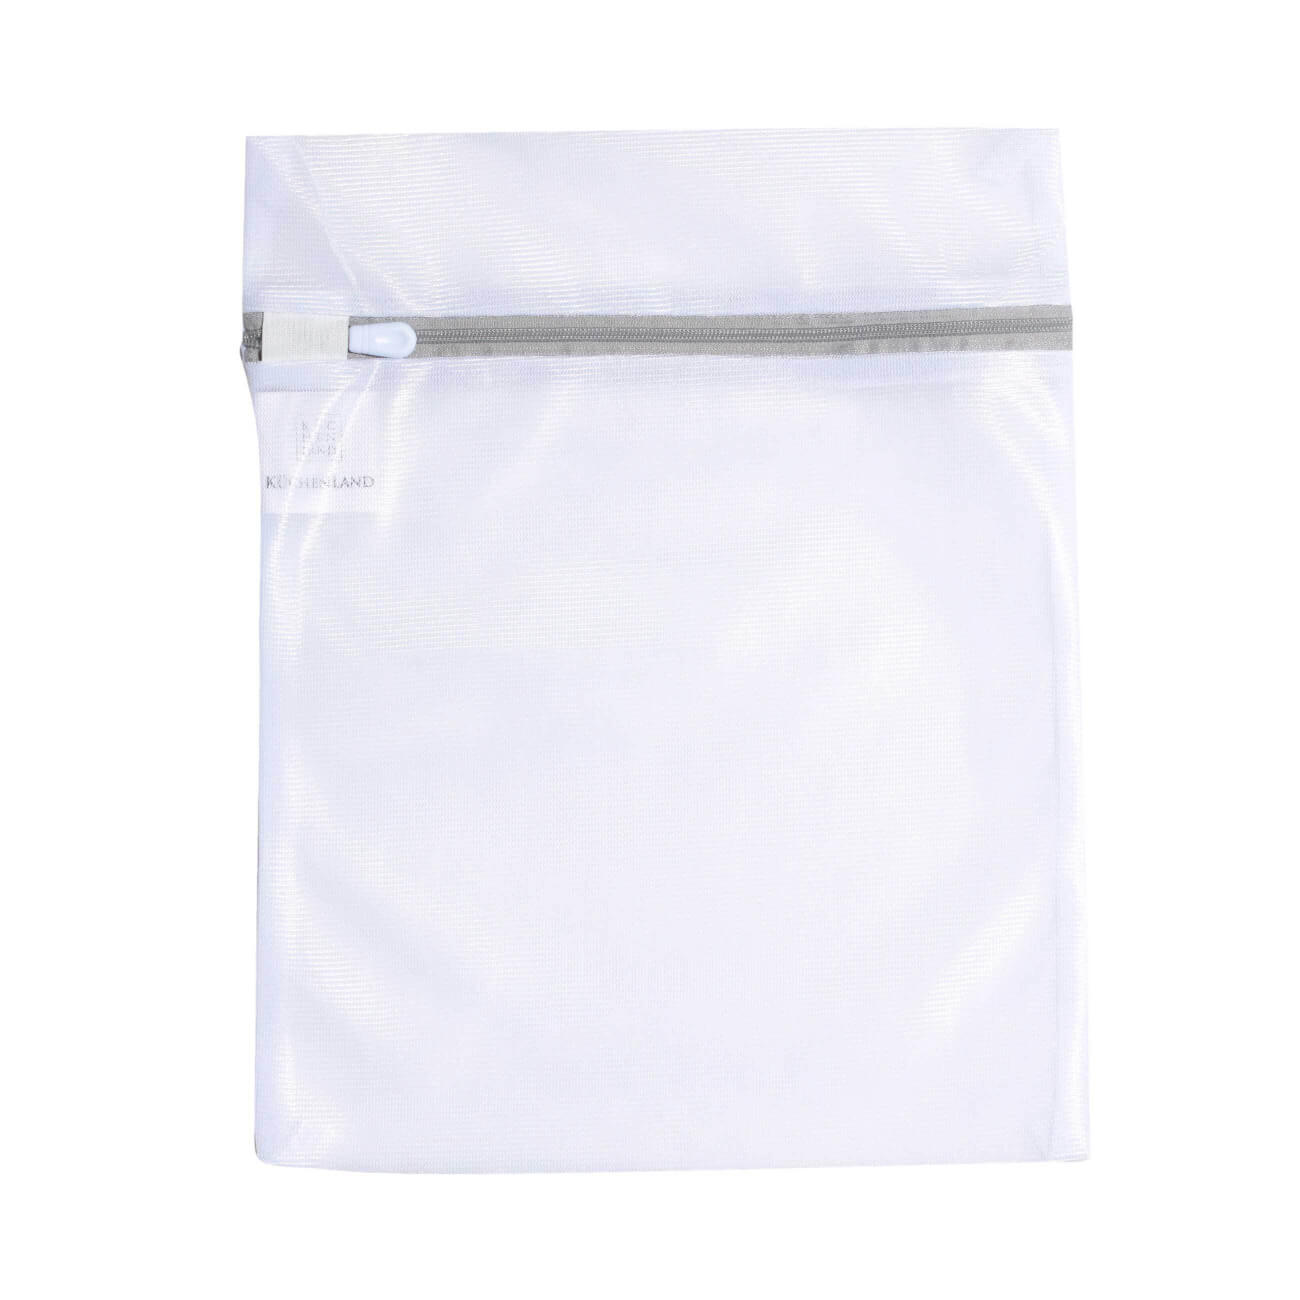 Мешок для стирки нижнего белья, 25х30 см, полиэстер, бело-серый, Safety plus